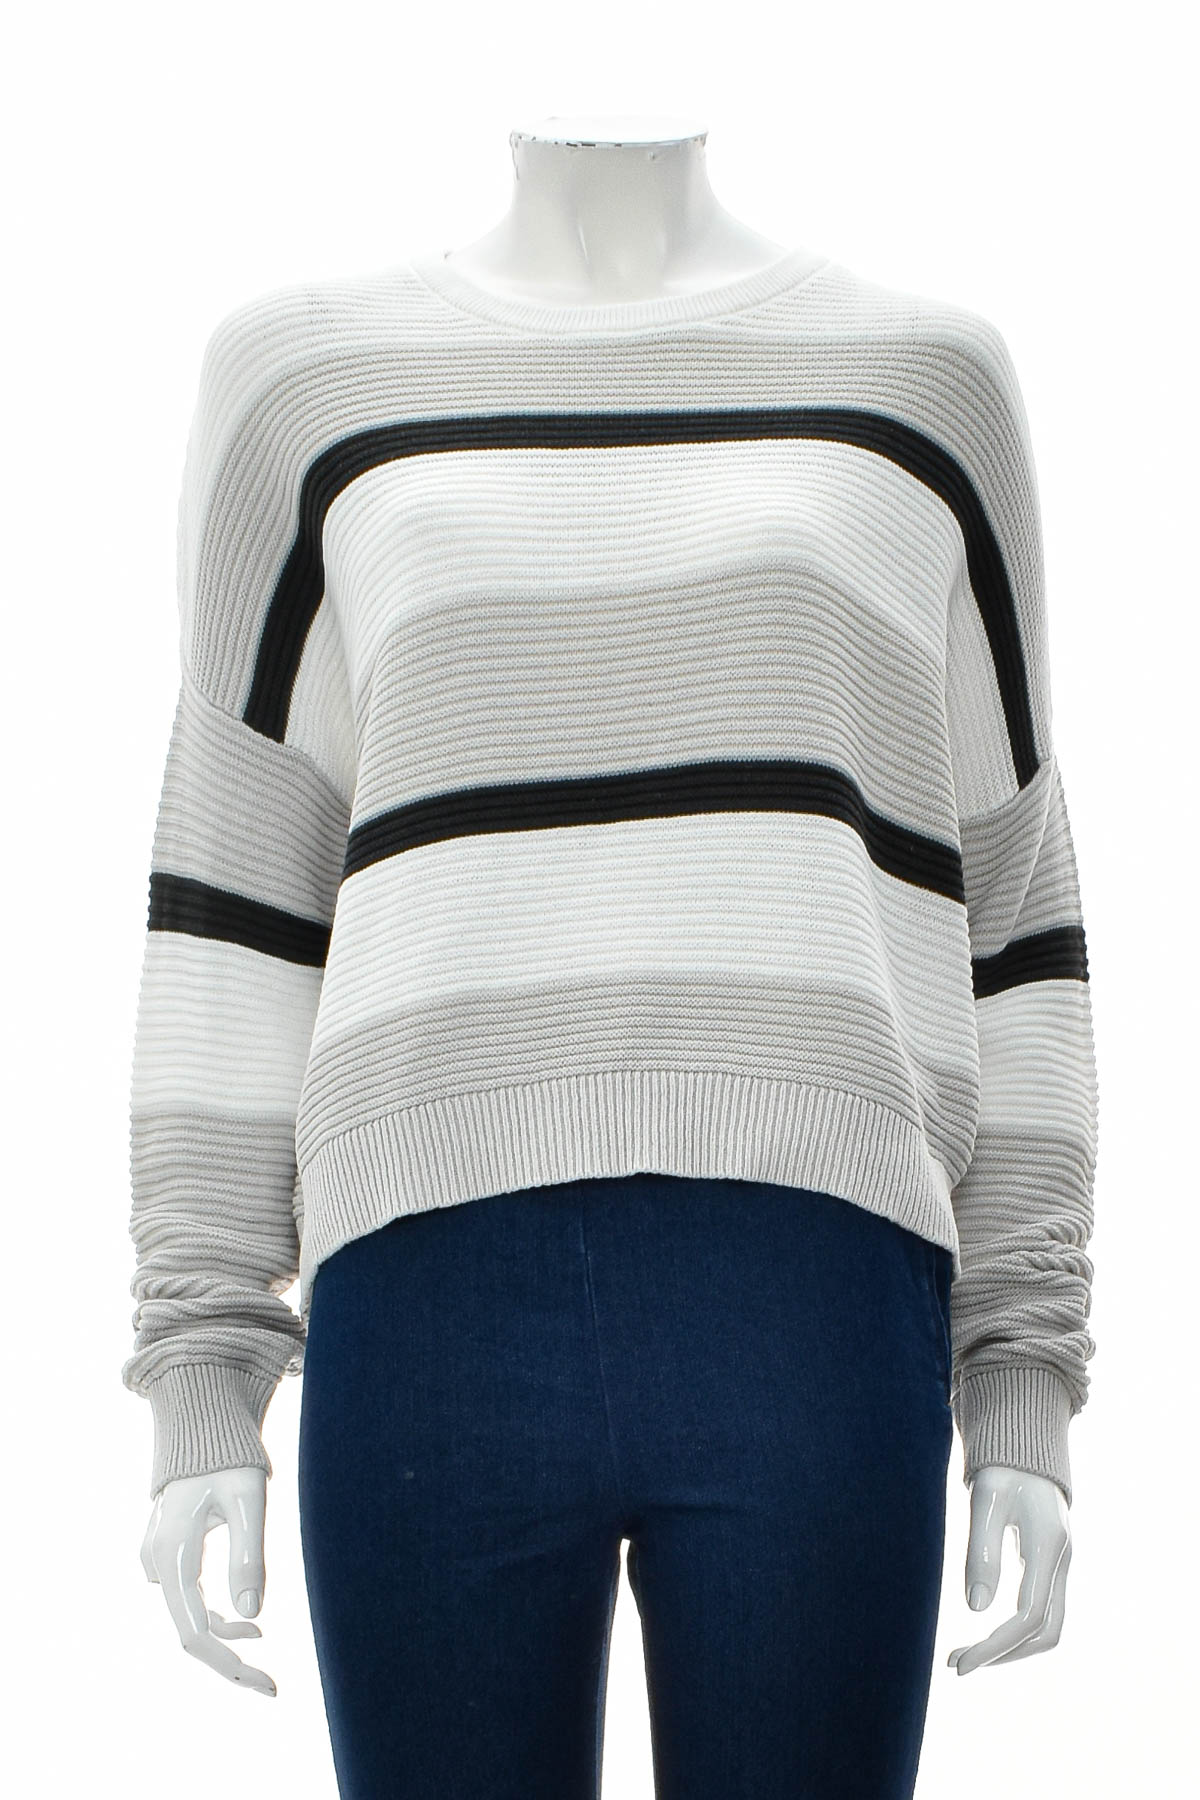 Women's sweater - Jay Jays - 0